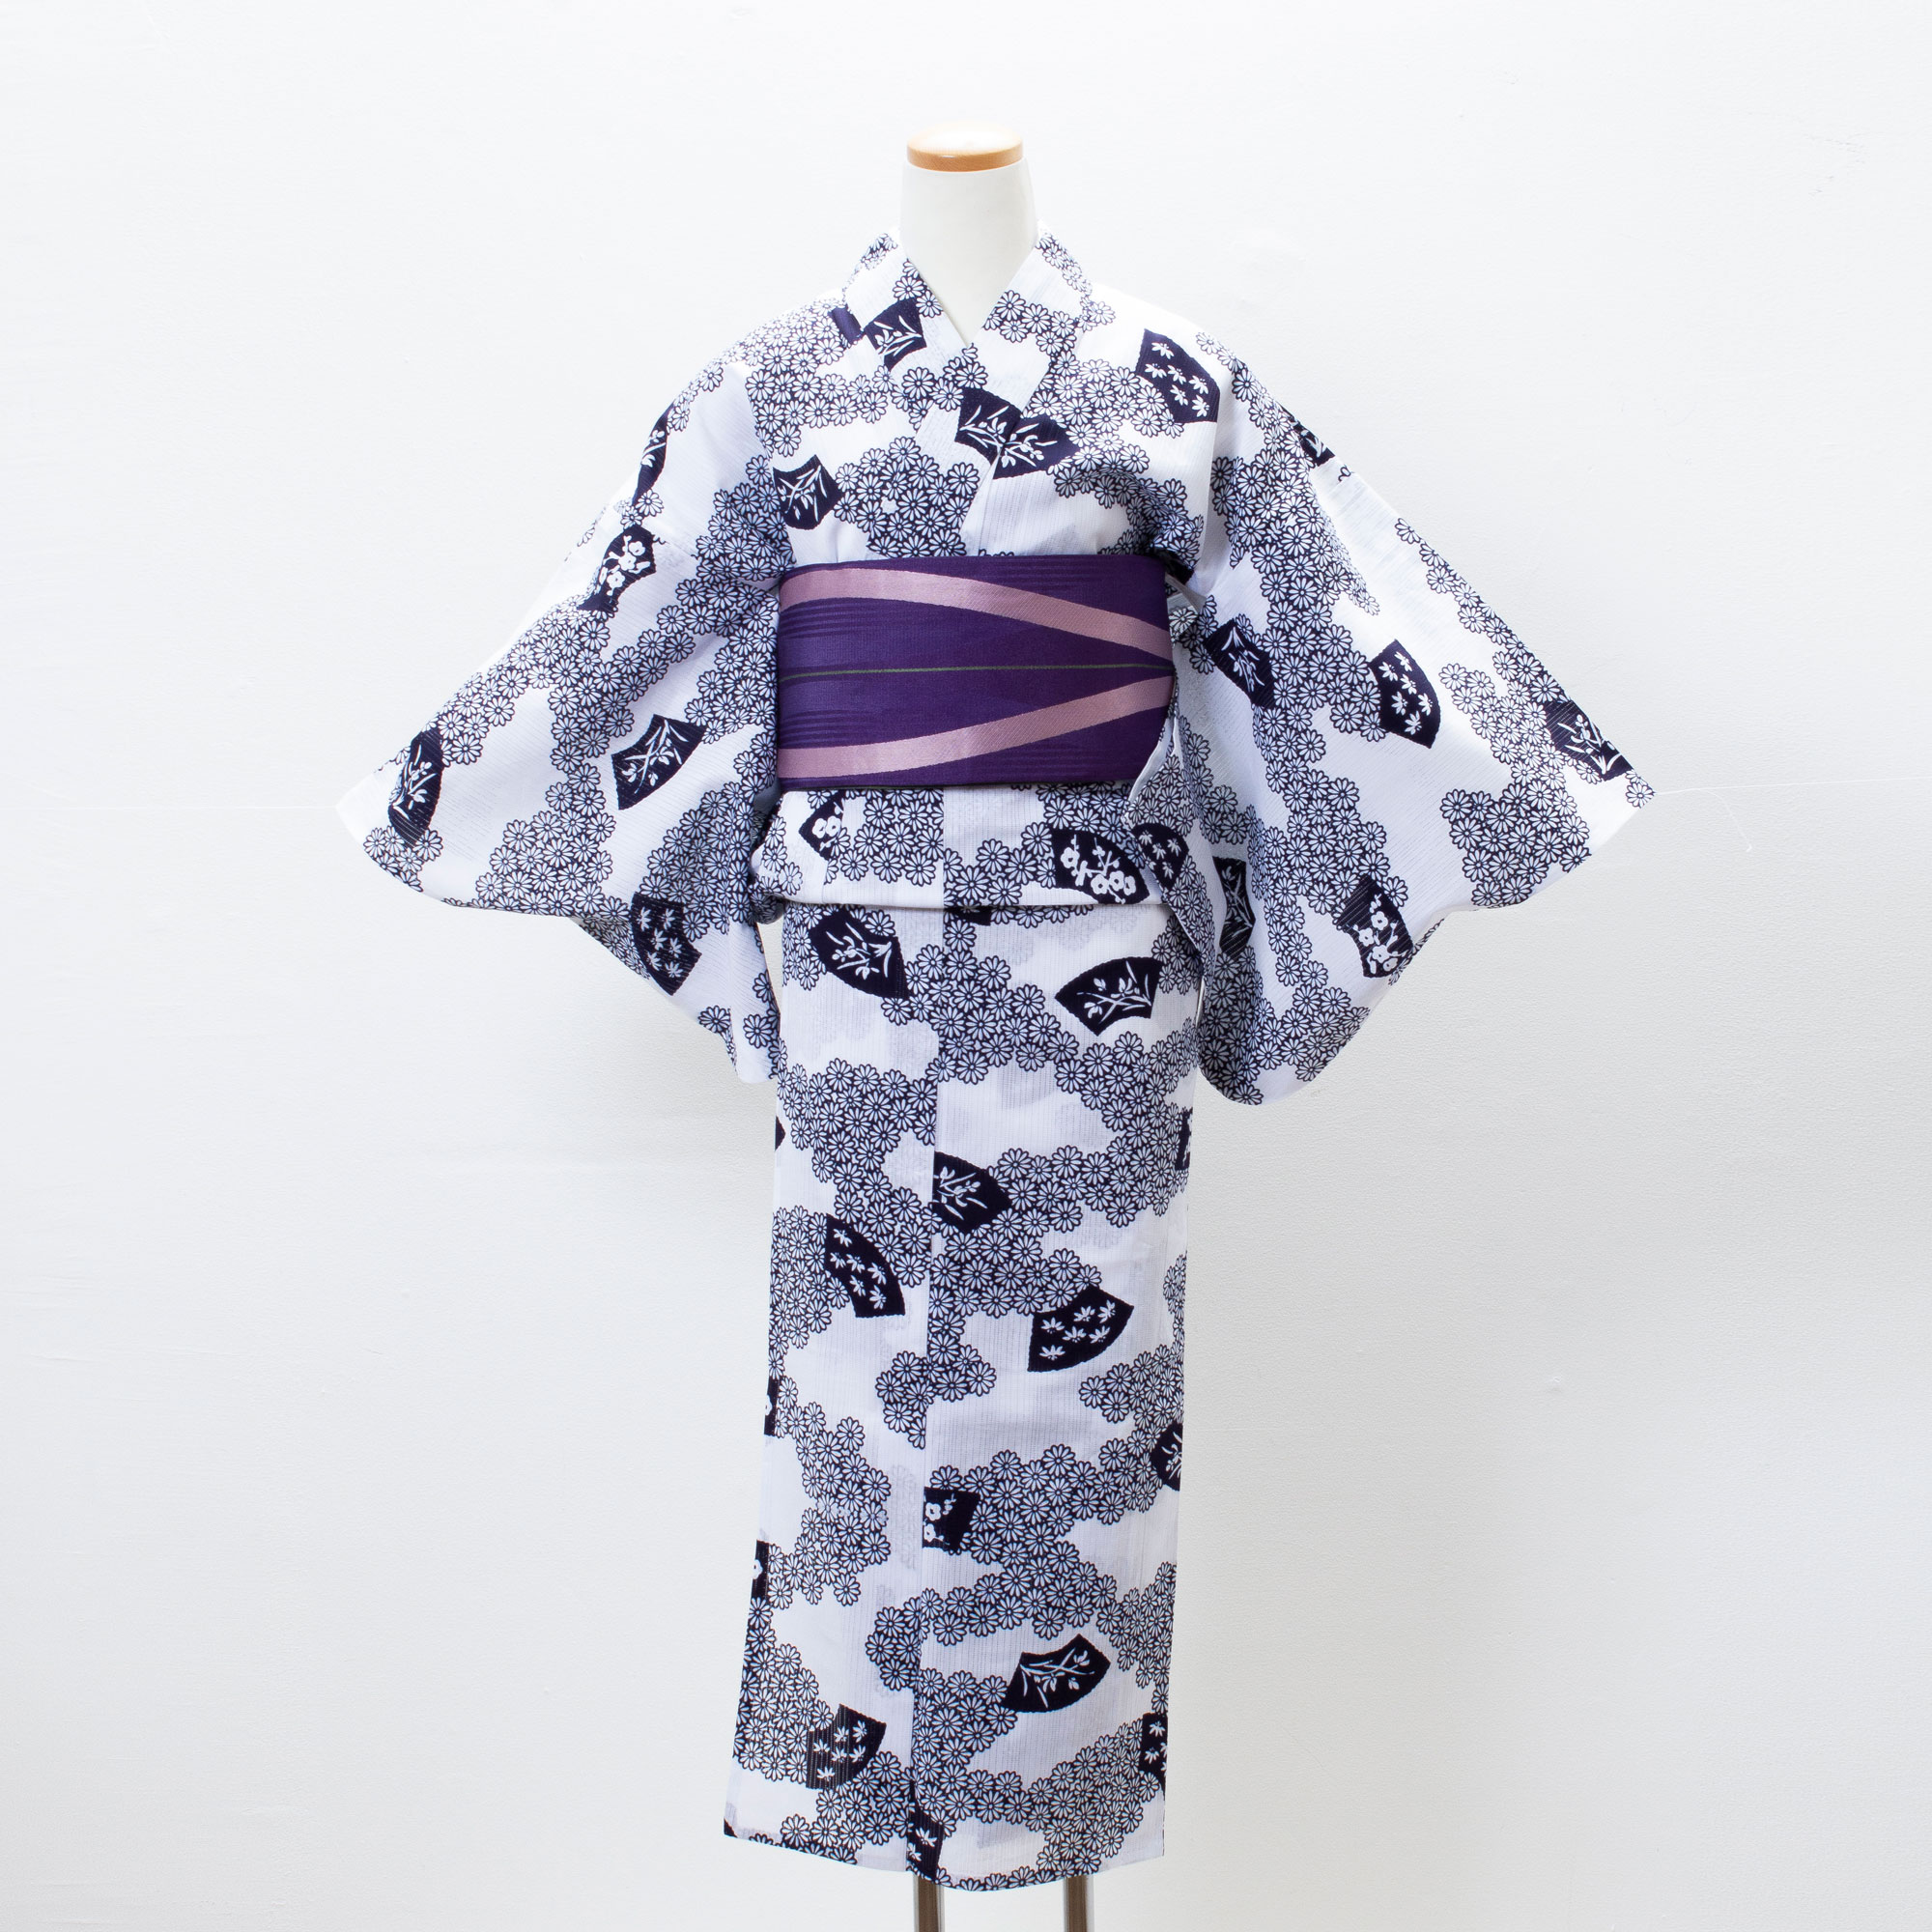 8月の納涼歌舞伎に浴衣を着て行こう！ | 銀座喜染